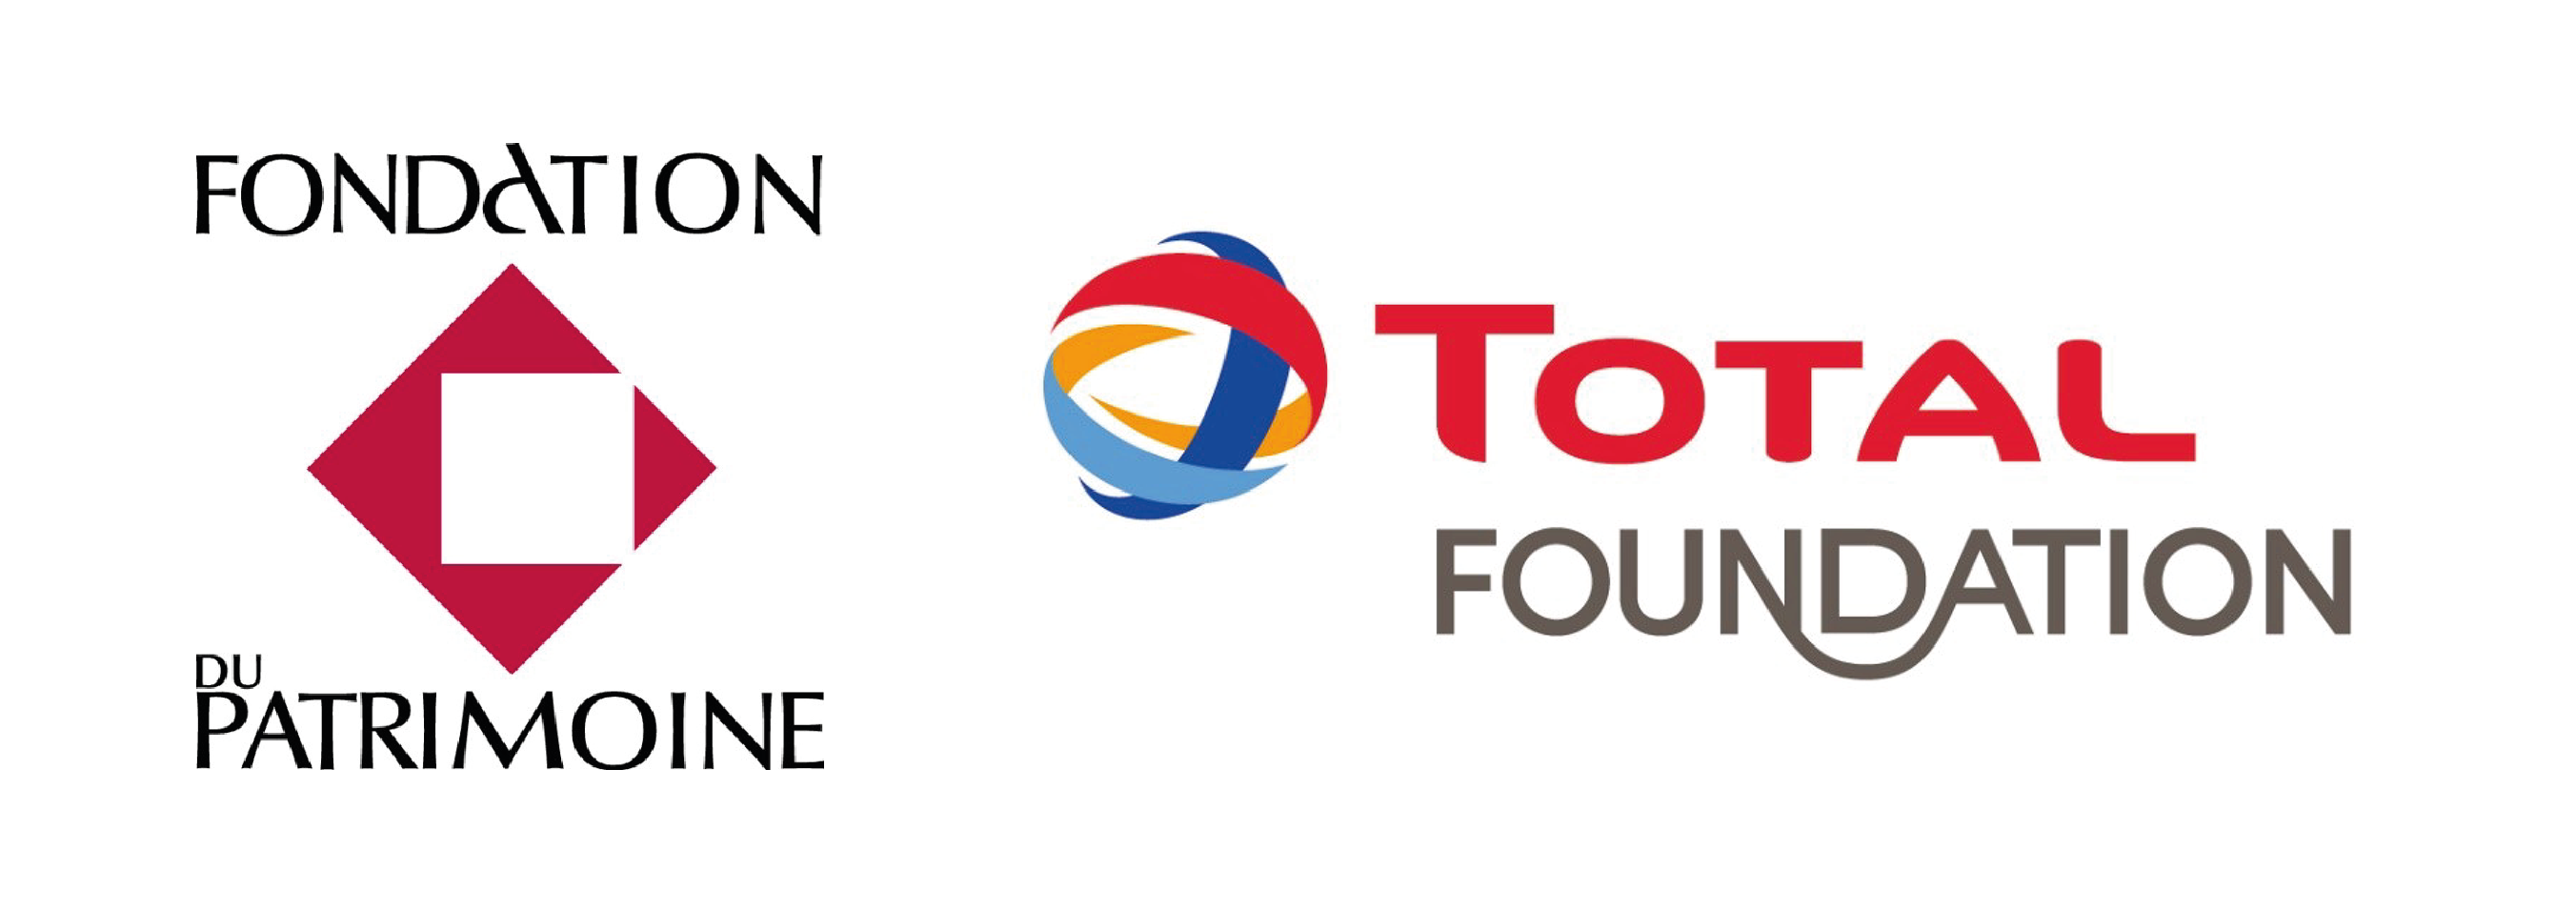 Logo Fondation du patrimoine et Total Foundation